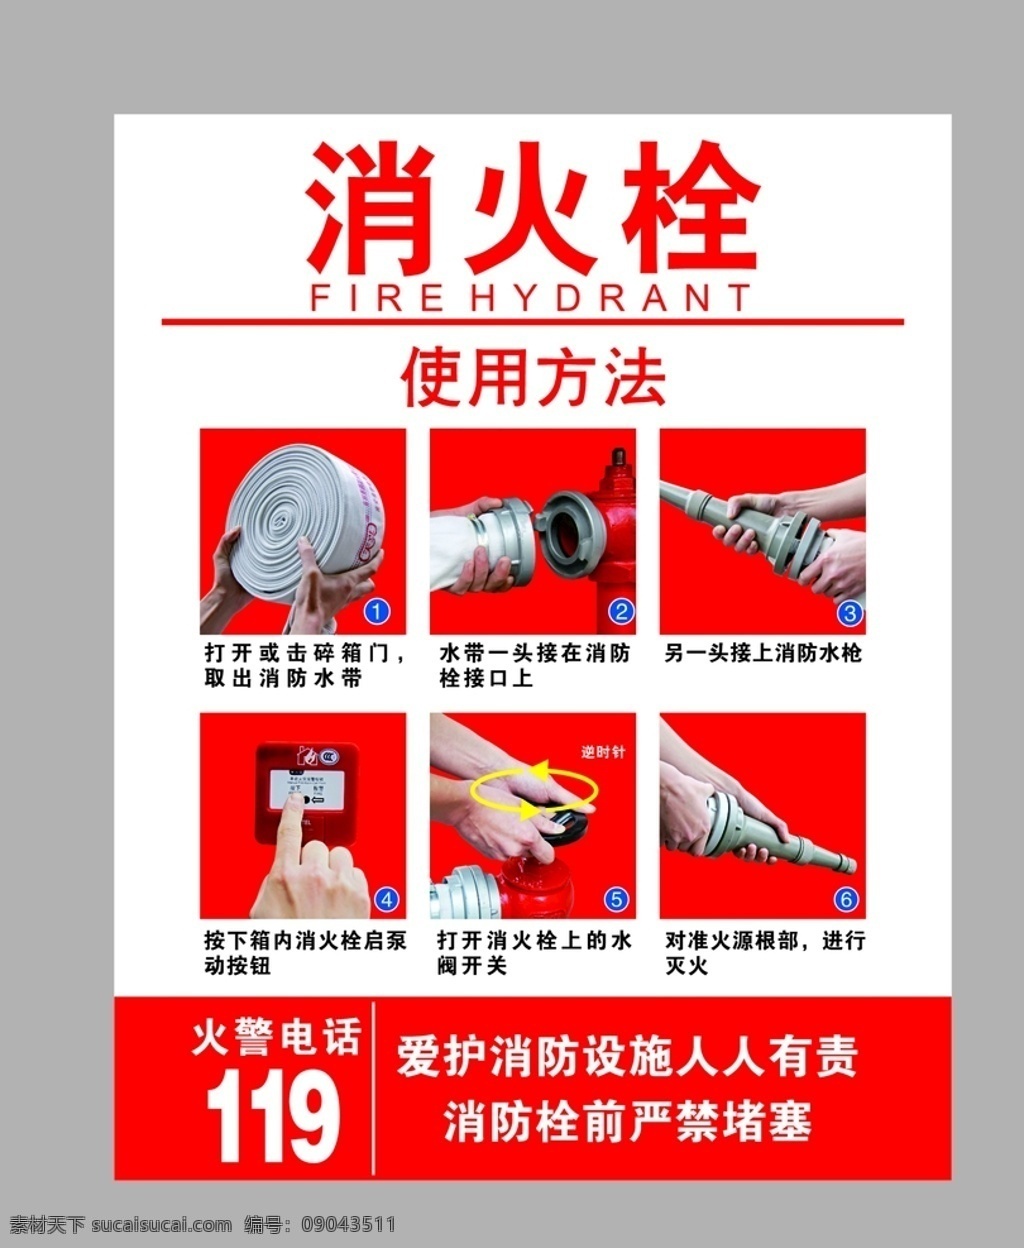 消火栓图片 消火栓 安全 通道 消防 使用方法 招贴设计